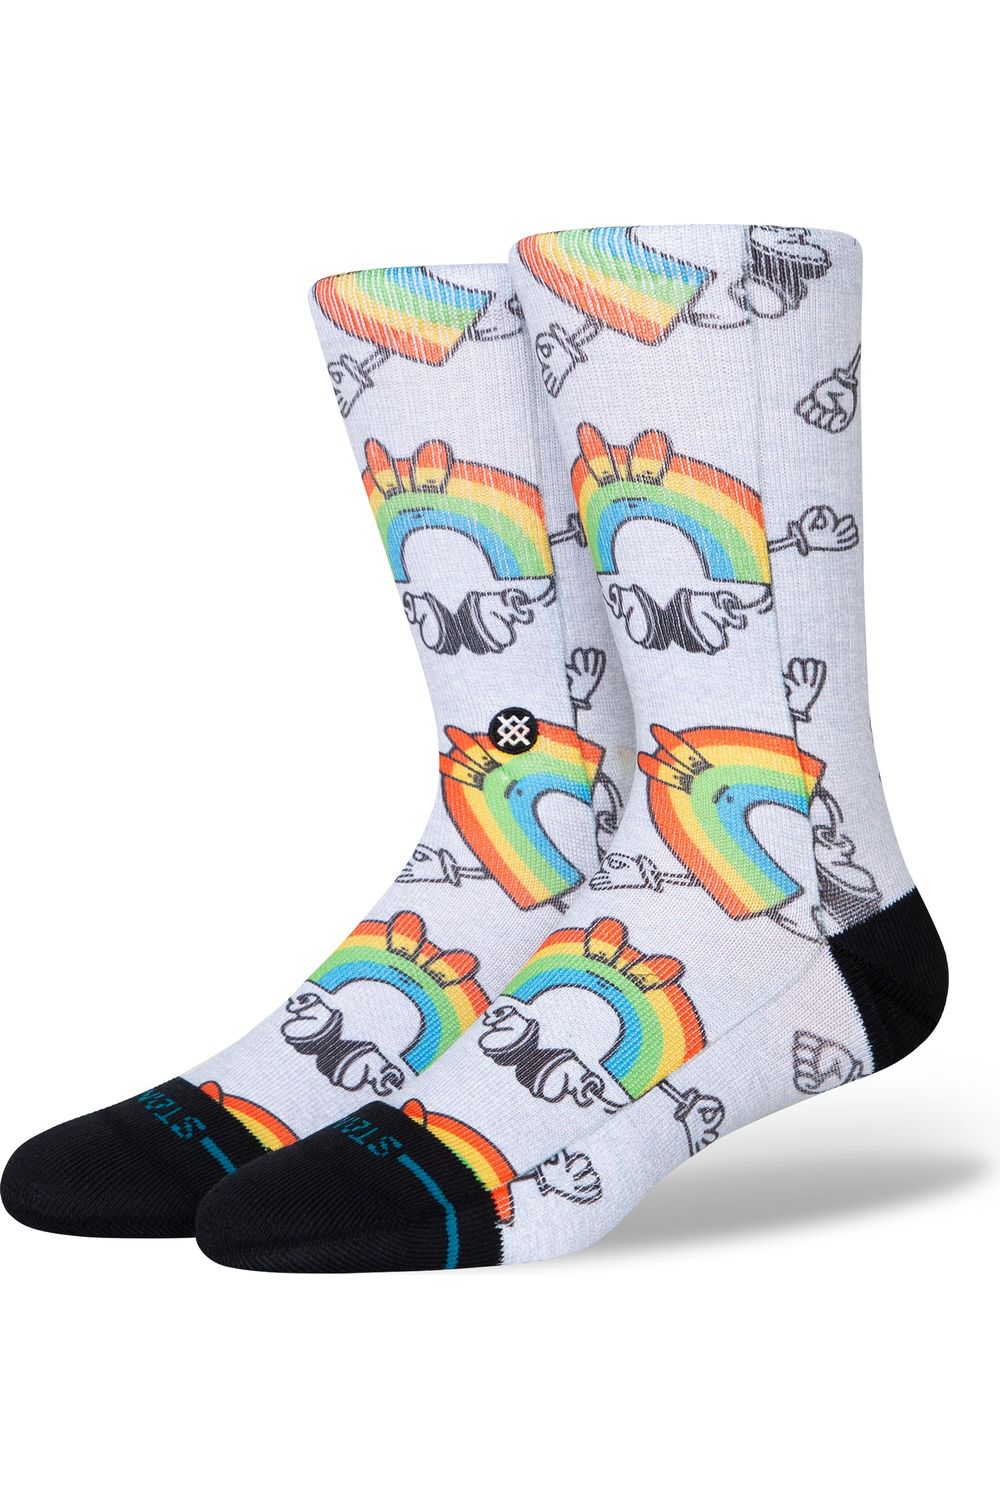 Stance Vibeon Socks Rainbow